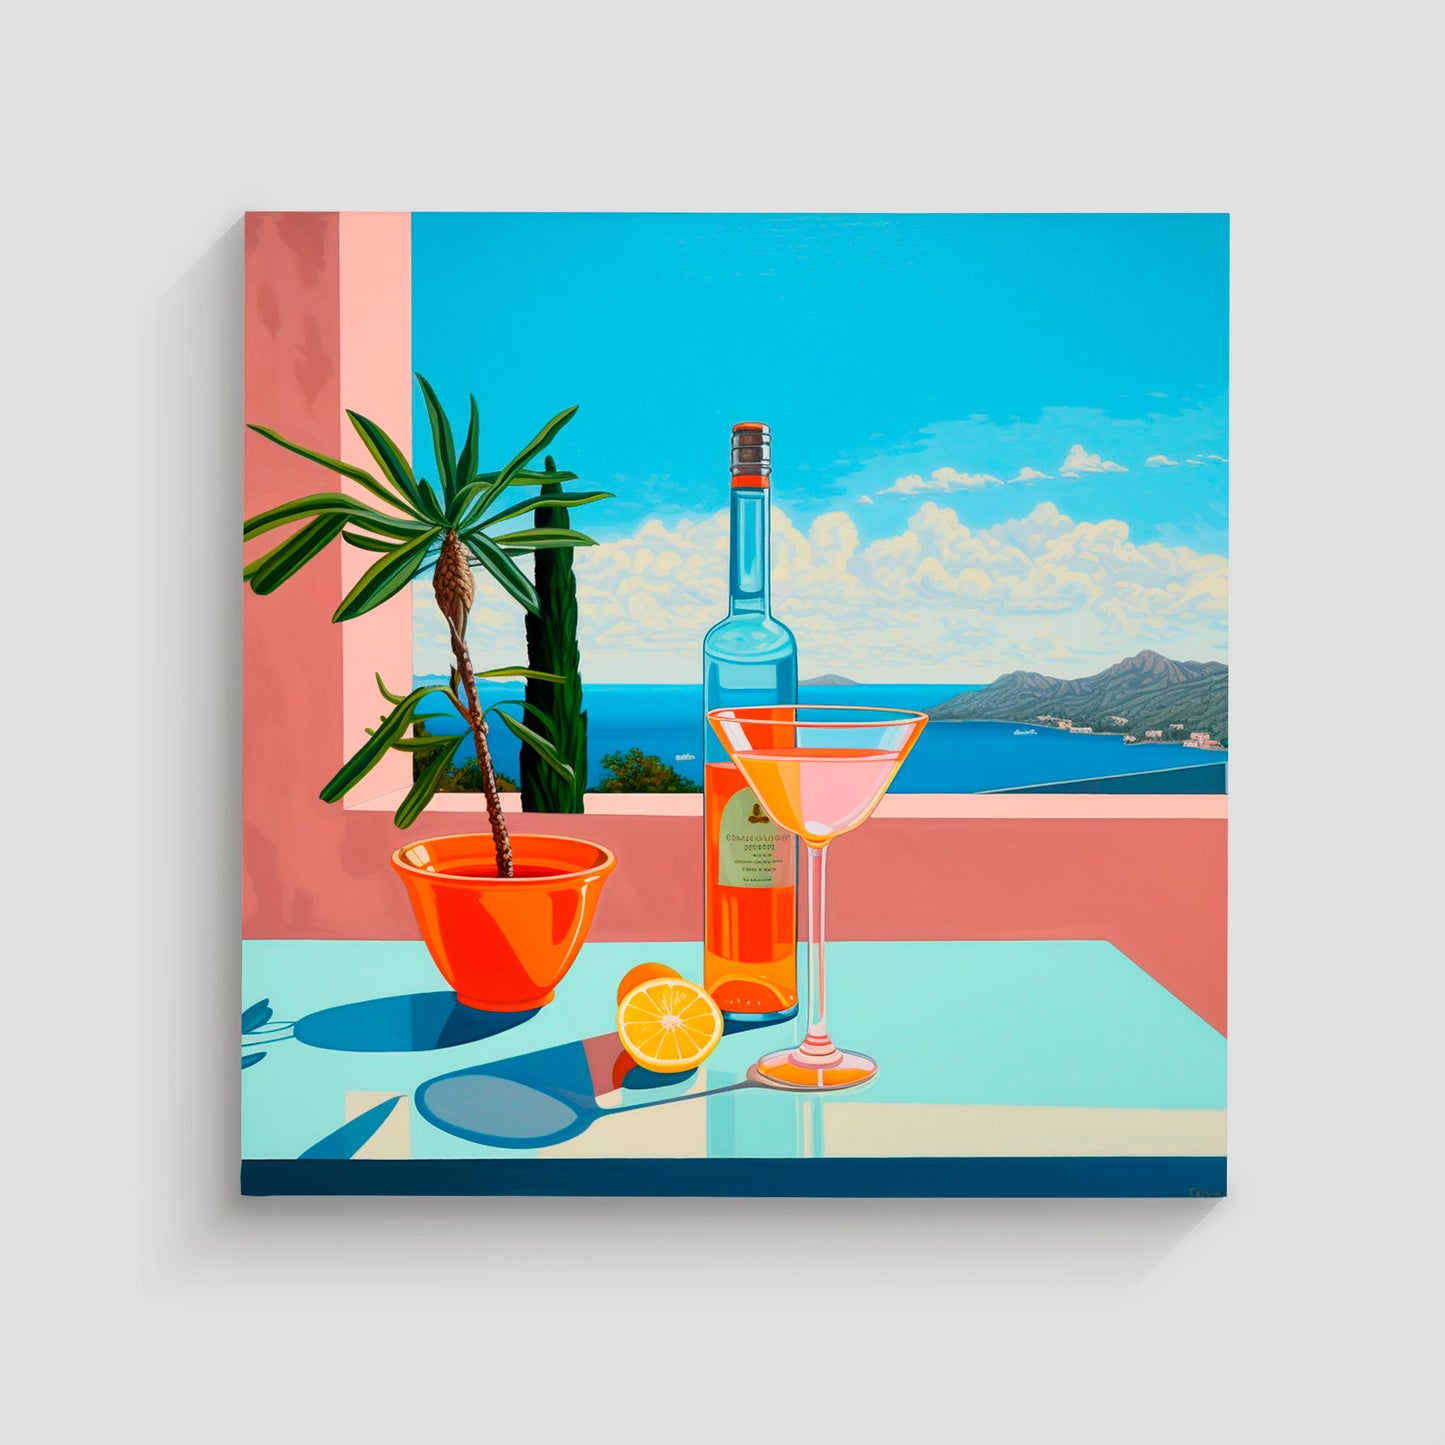 Ilustración de una escena veraniega con un cóctel en una copa martini, una botella de licor, una rodaja de limón y una planta en maceta, con vista al mar y las montañas.